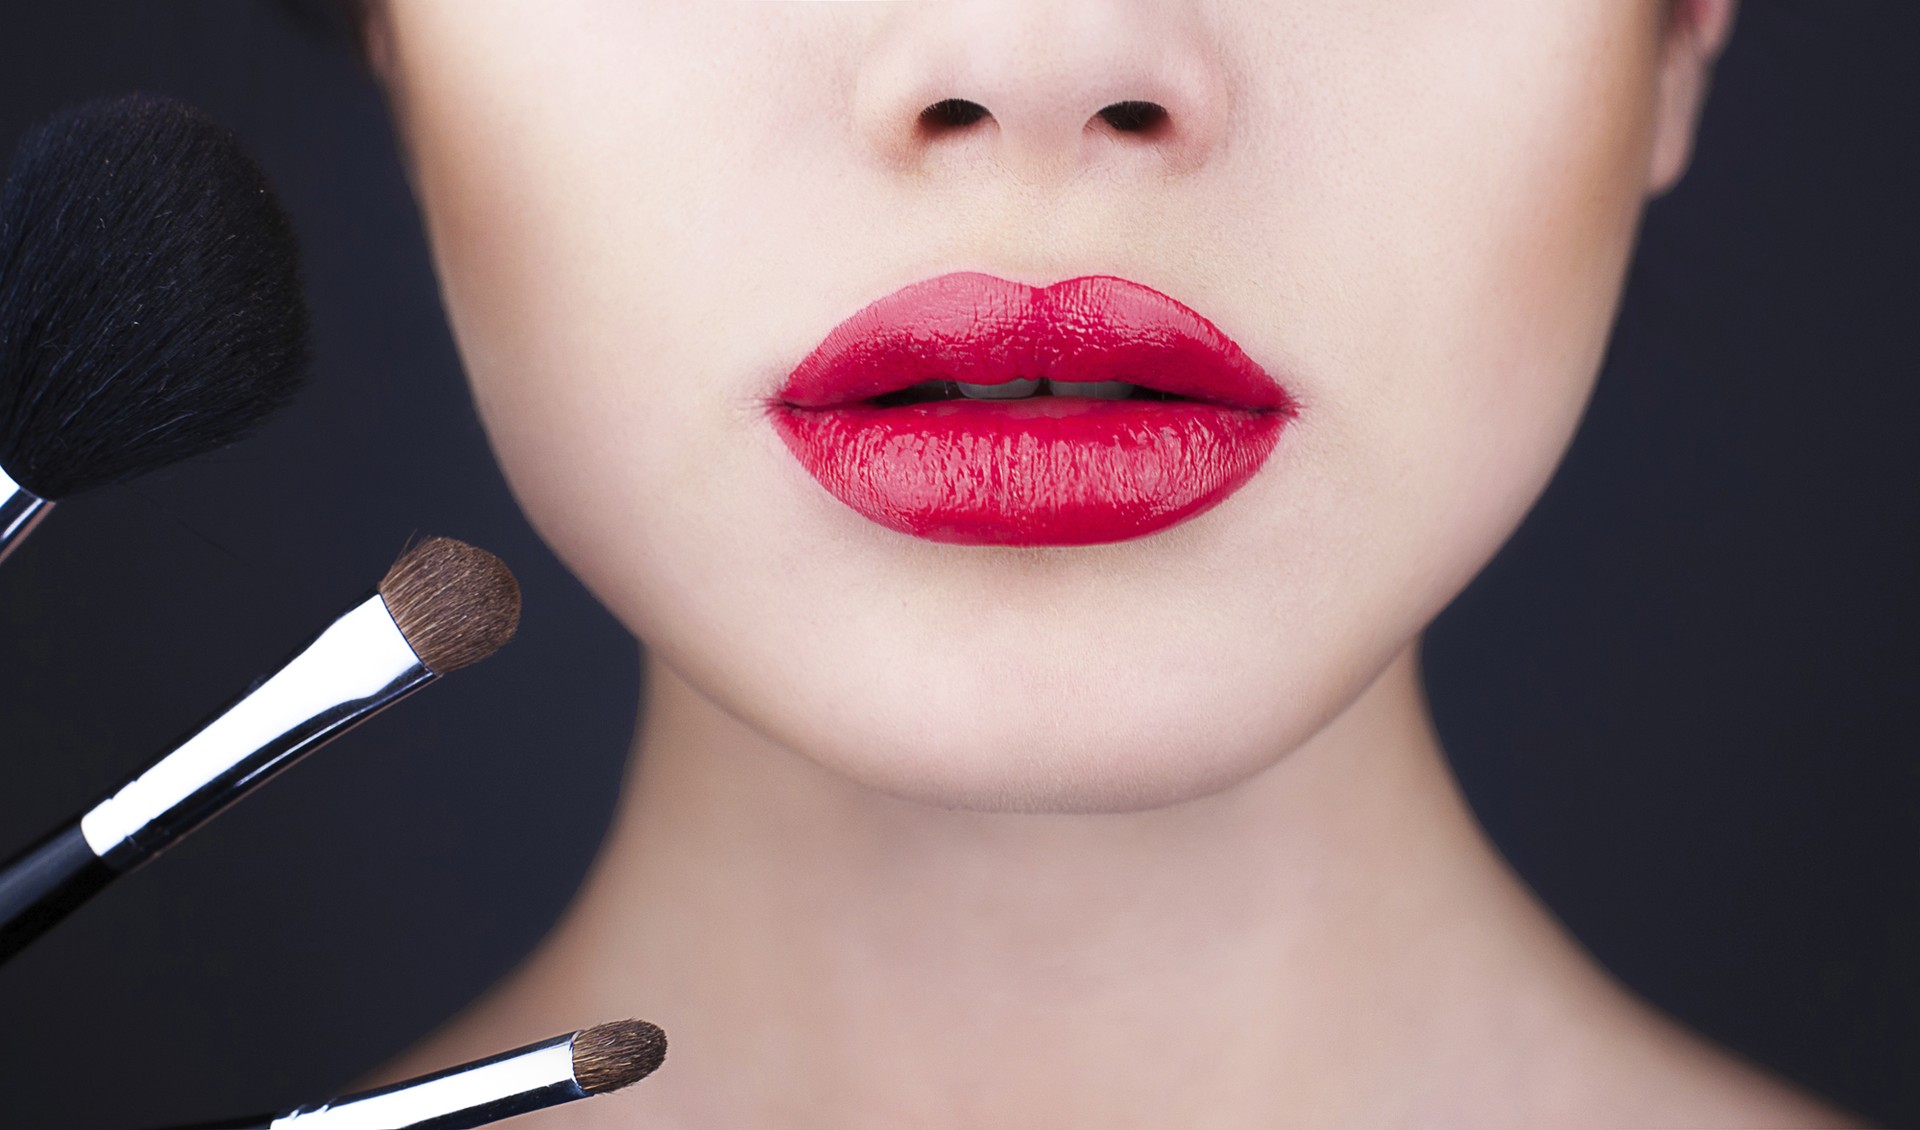 Descubra a maneira certa de aplicar a maquiagem (Foto: Thinkstock)